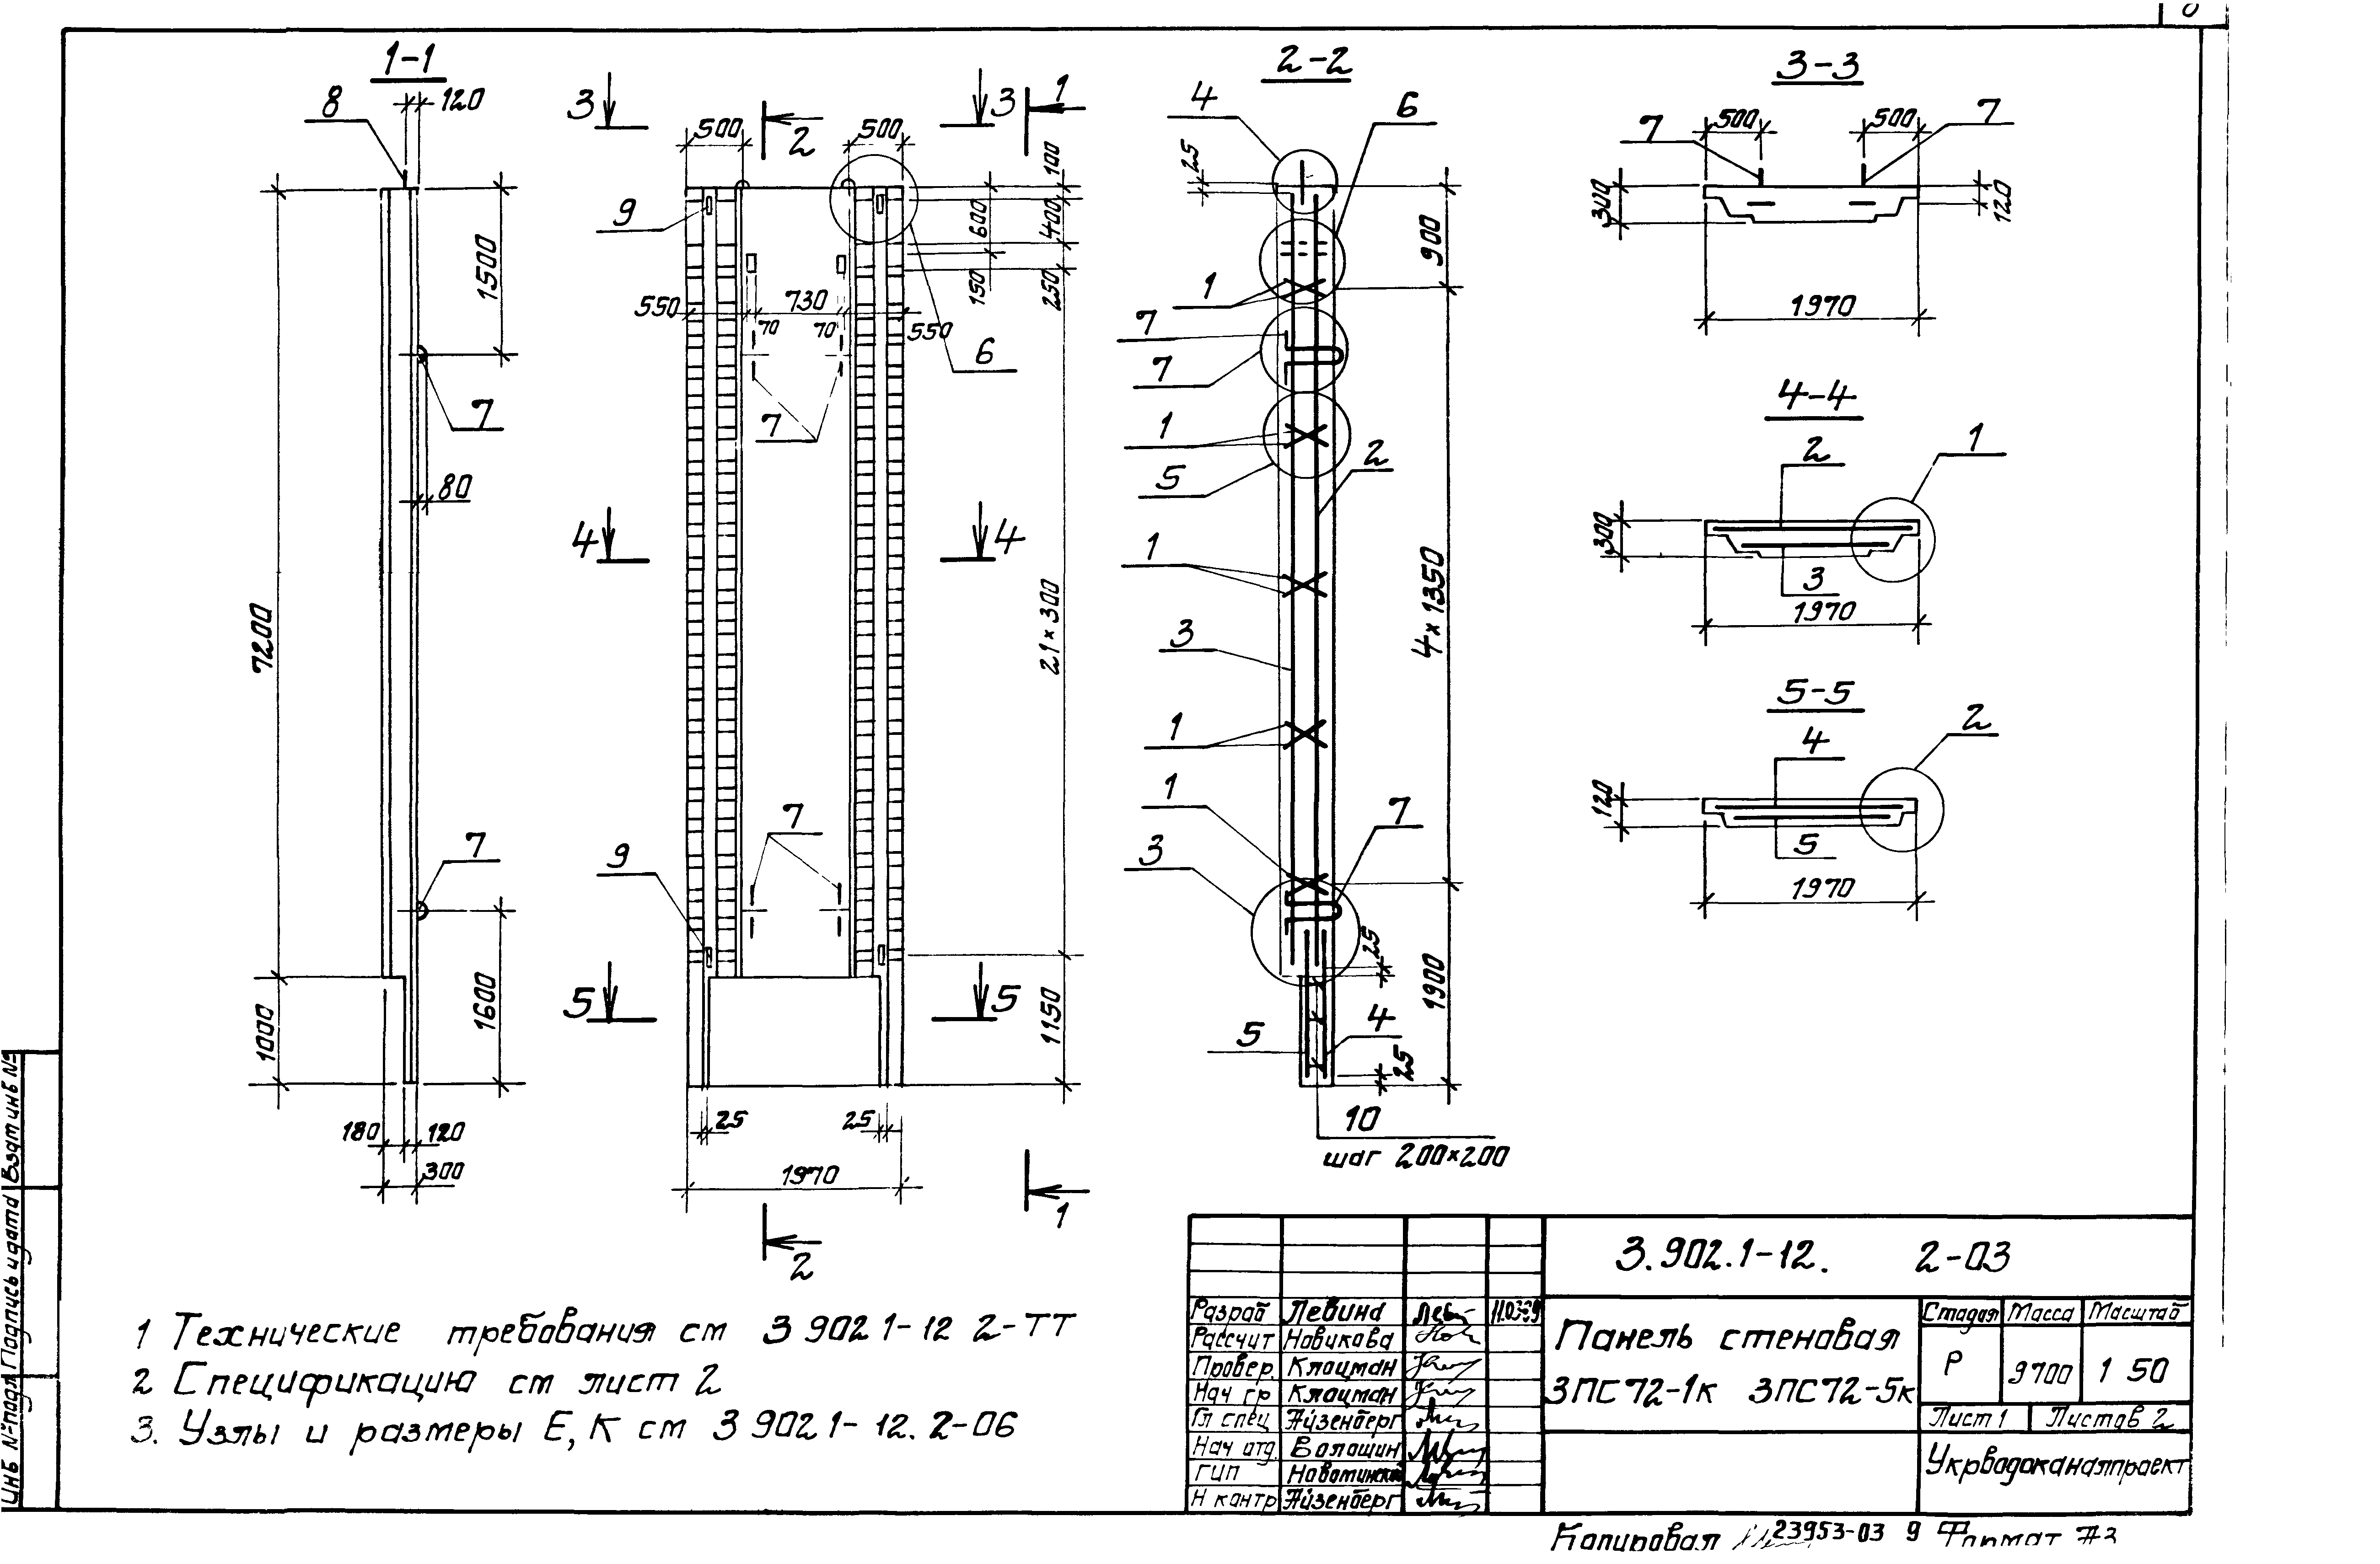 Панель стеновая 3ПС72-5к Серия 3.902.1-12, вып.2